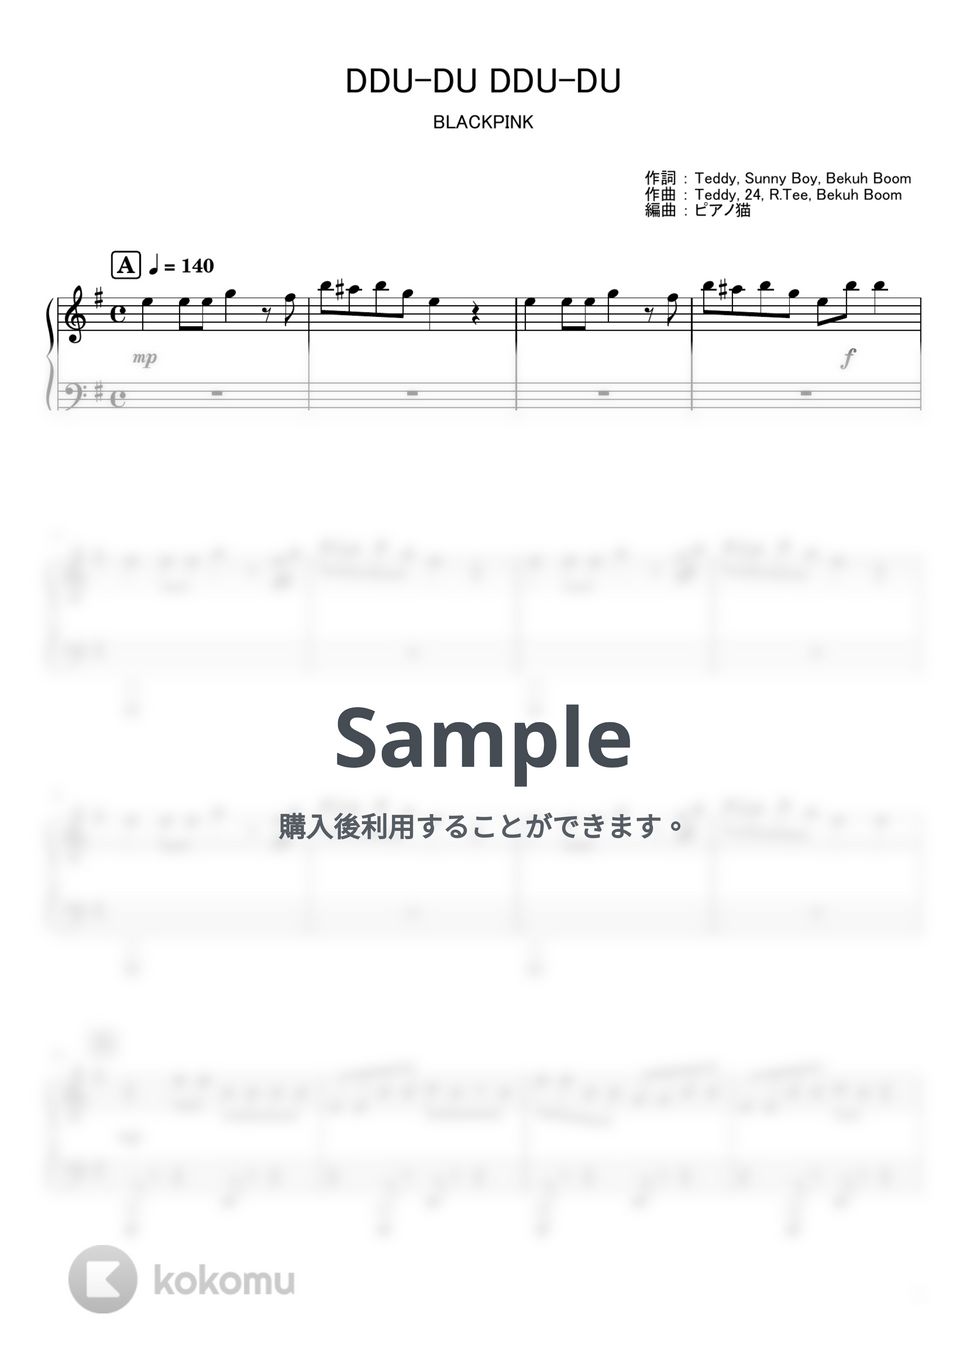 BLACKPINK - DDU-DU DDU-DU (ピアノ / 楽譜 / 韓国) by ピアノ猫